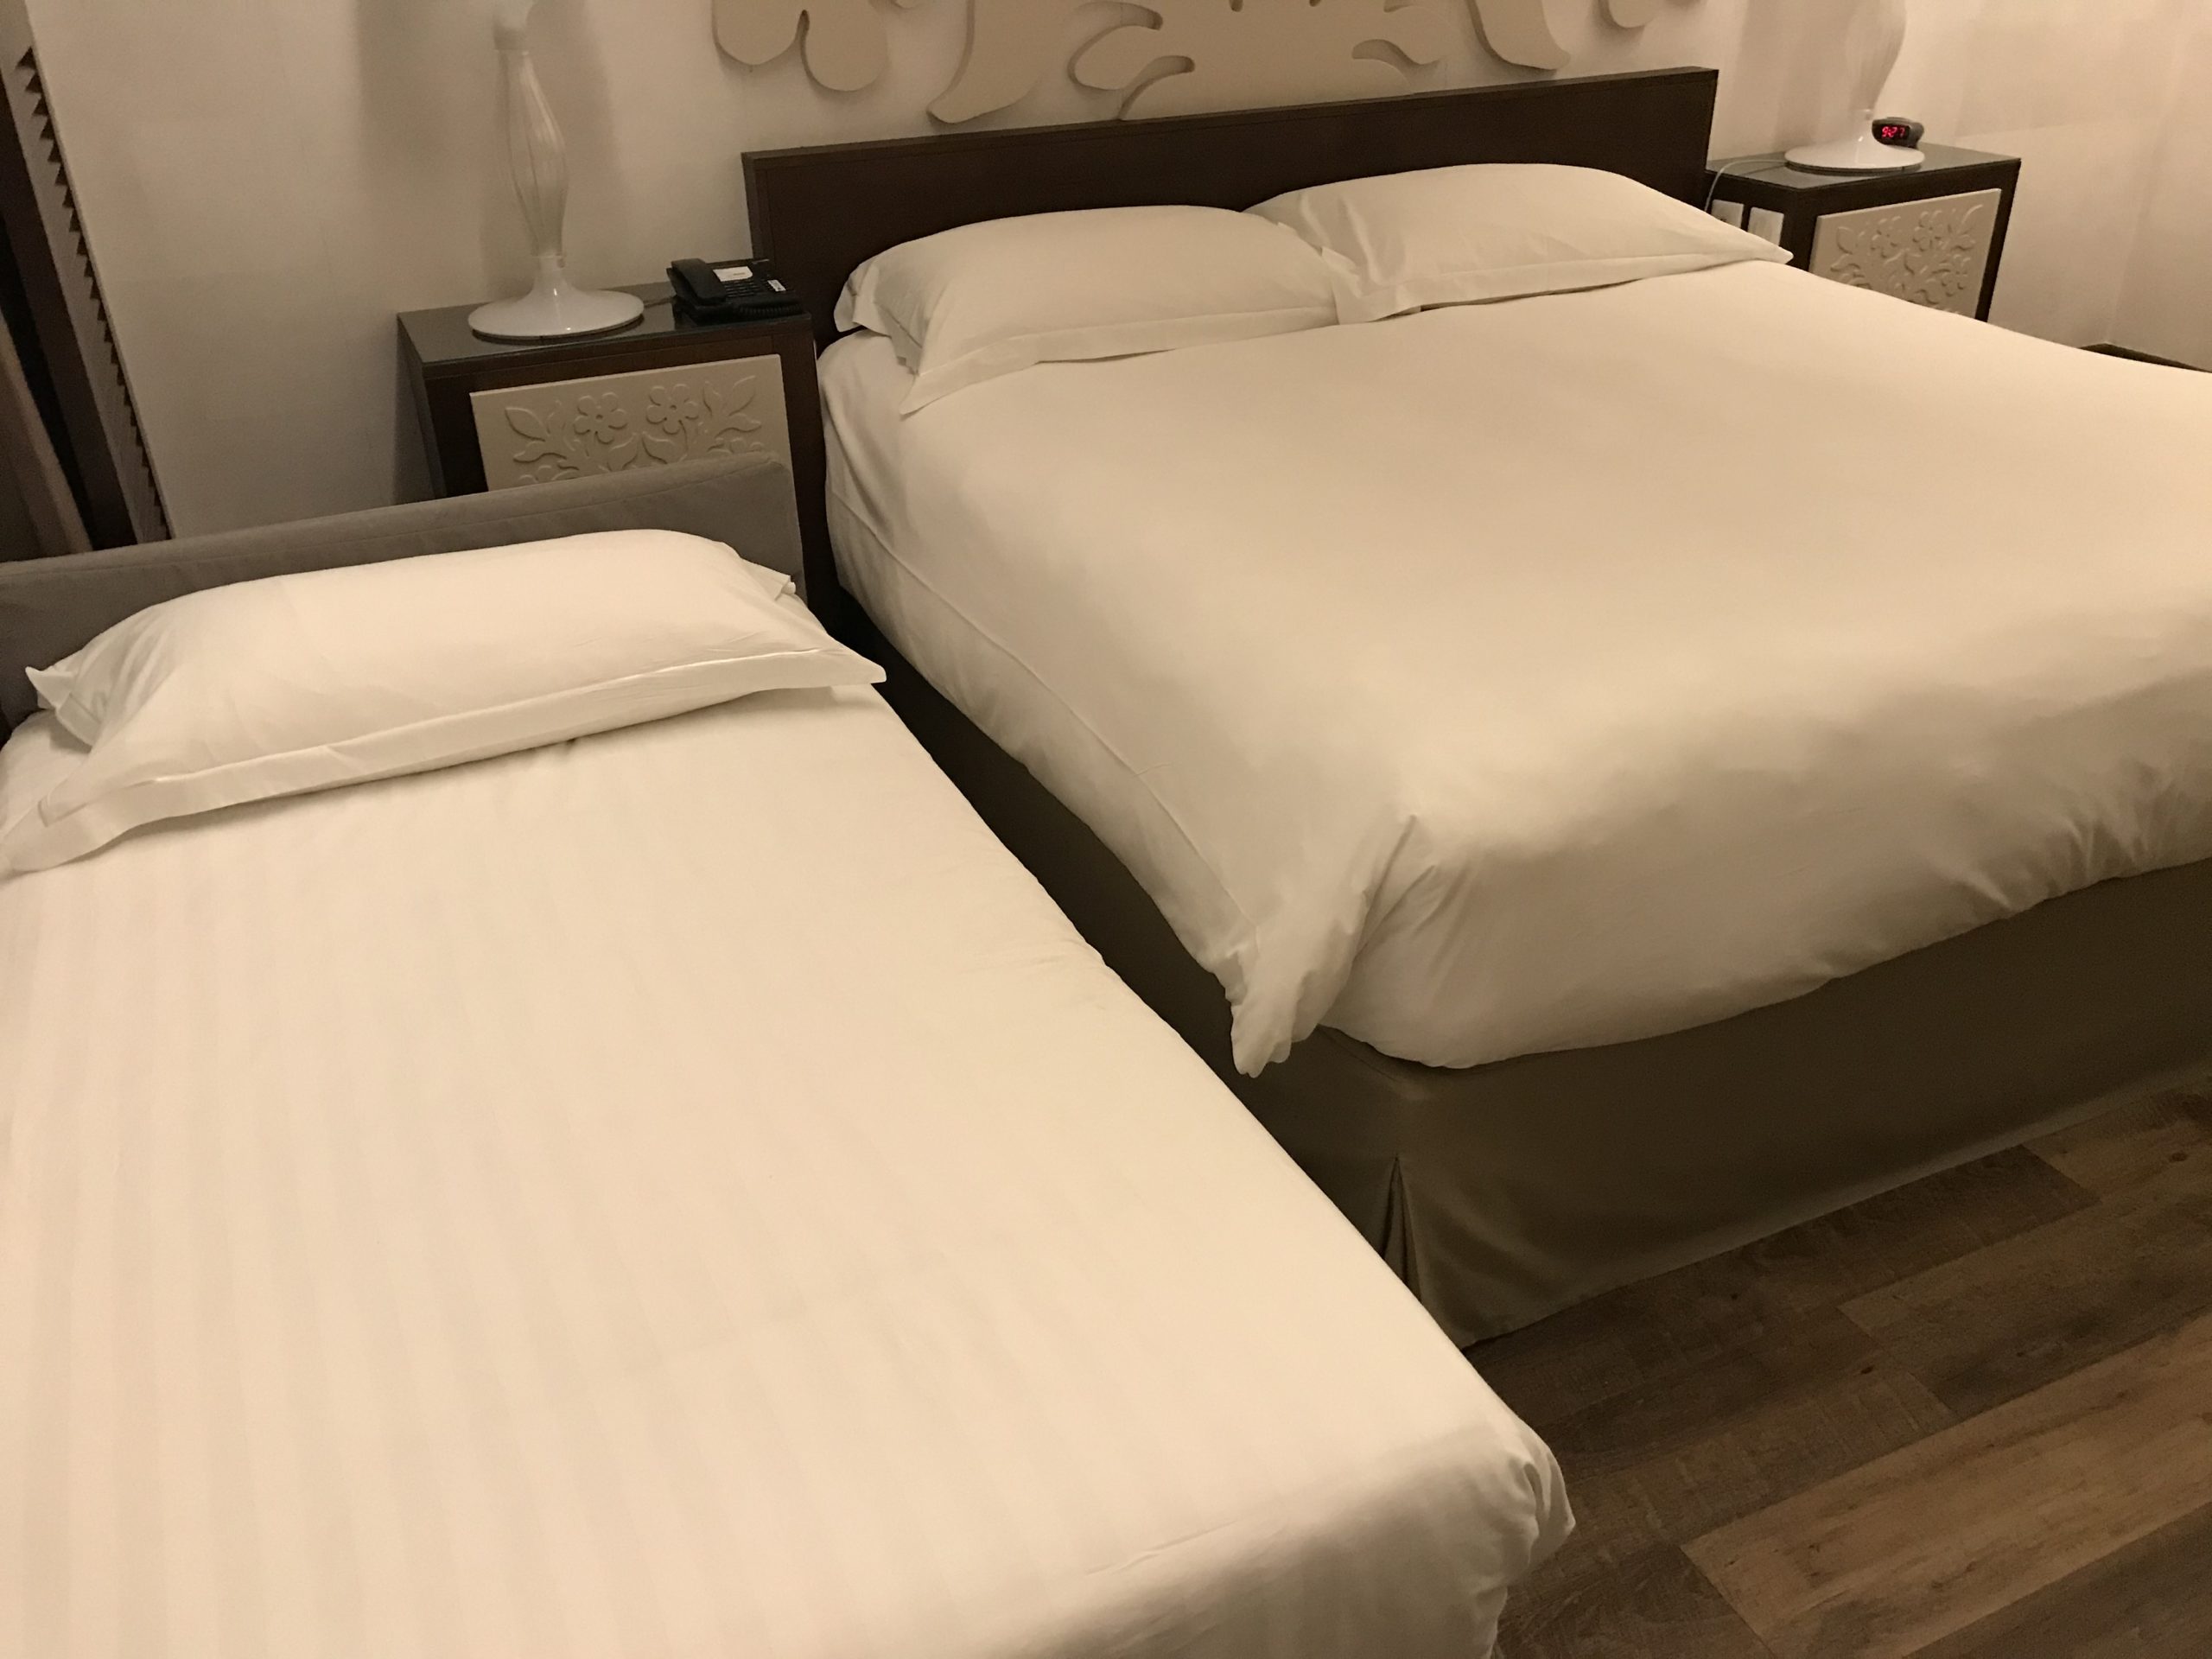 ホテルのベッド